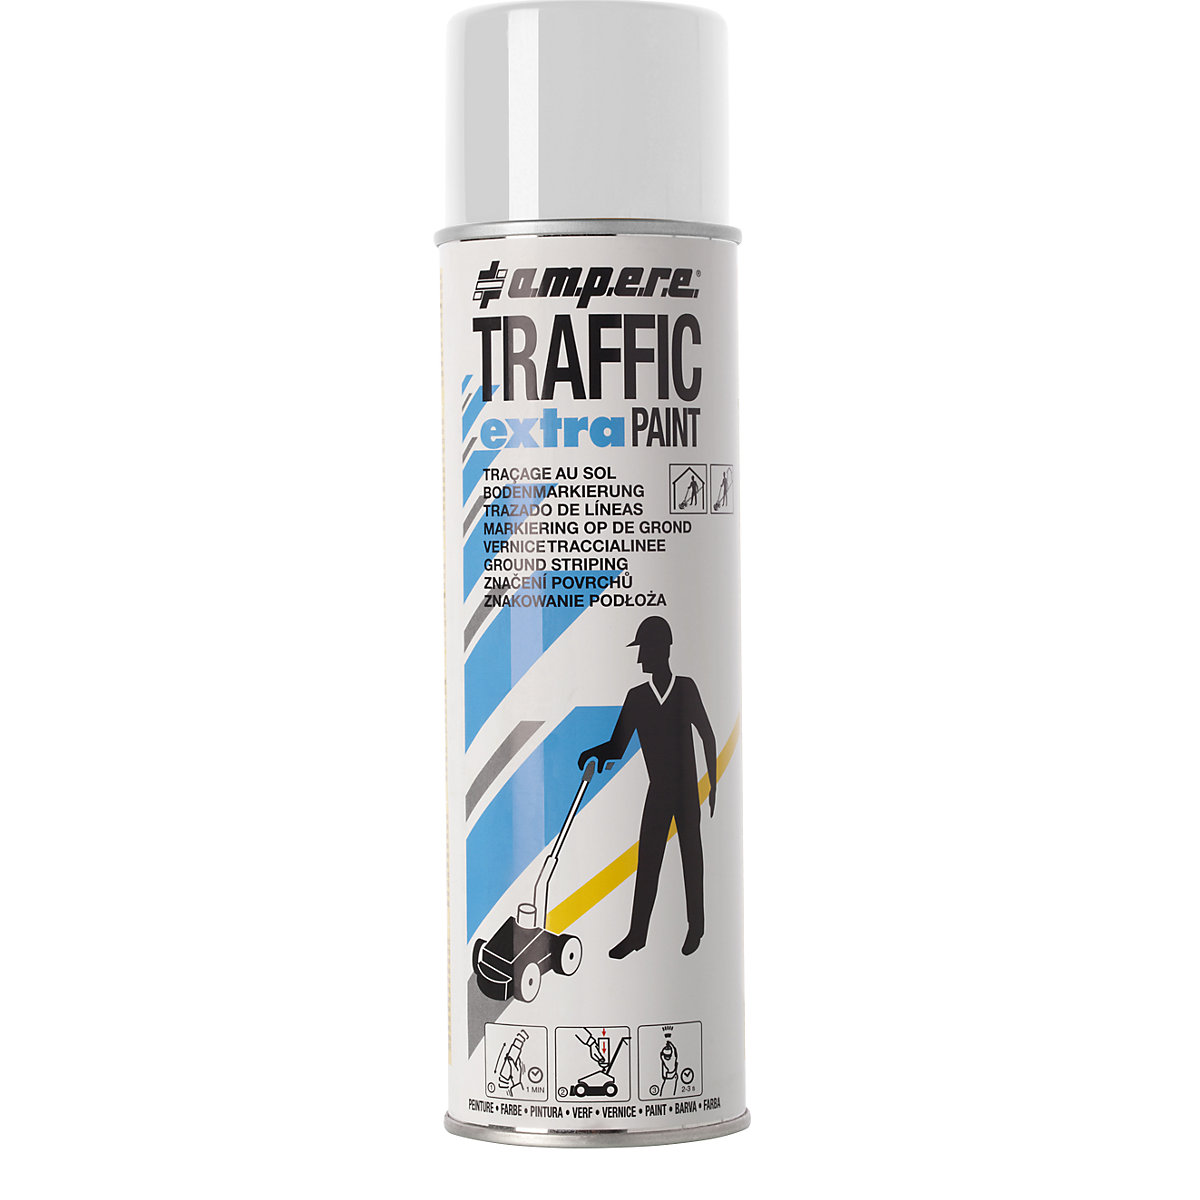 Peinture de marquage Traffic extra Paint® pour fortes contraintes – Ampere